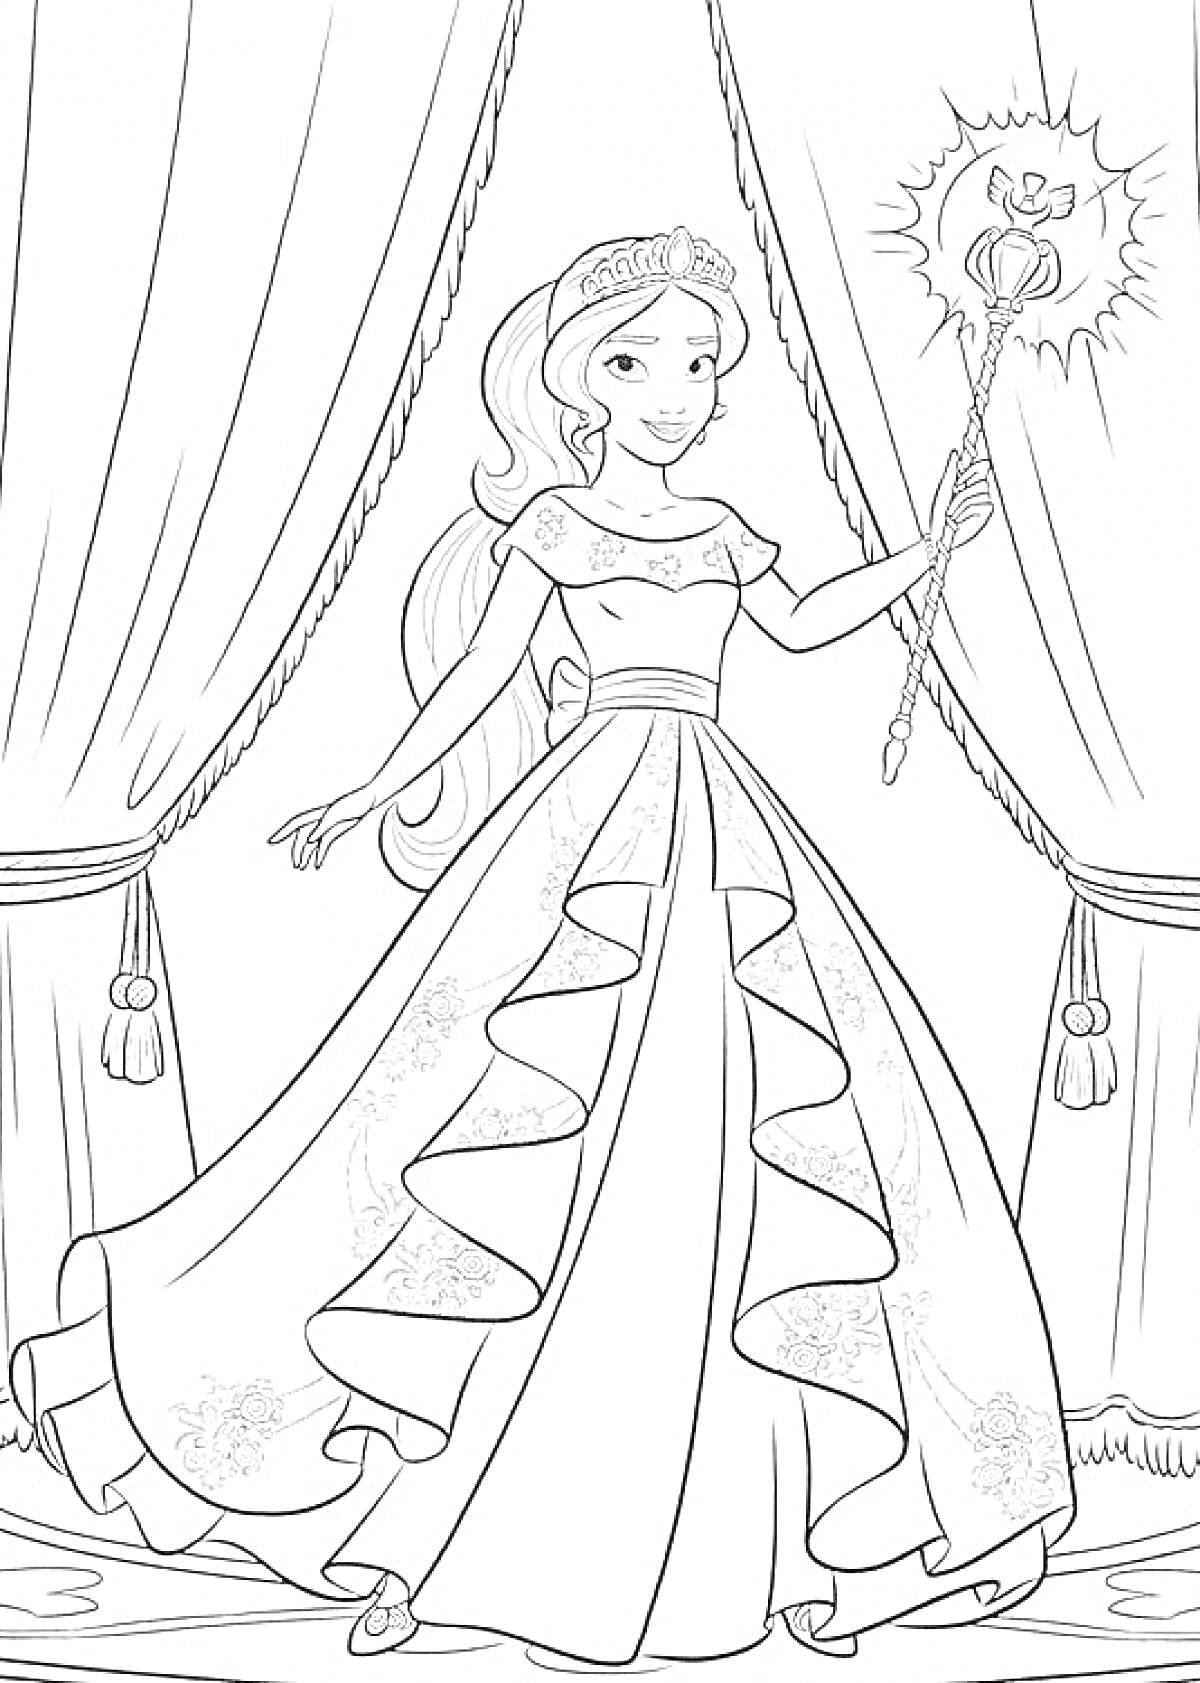 Раскраска Елена из Авалора в королевском платье с жезлом на фоне занавесок